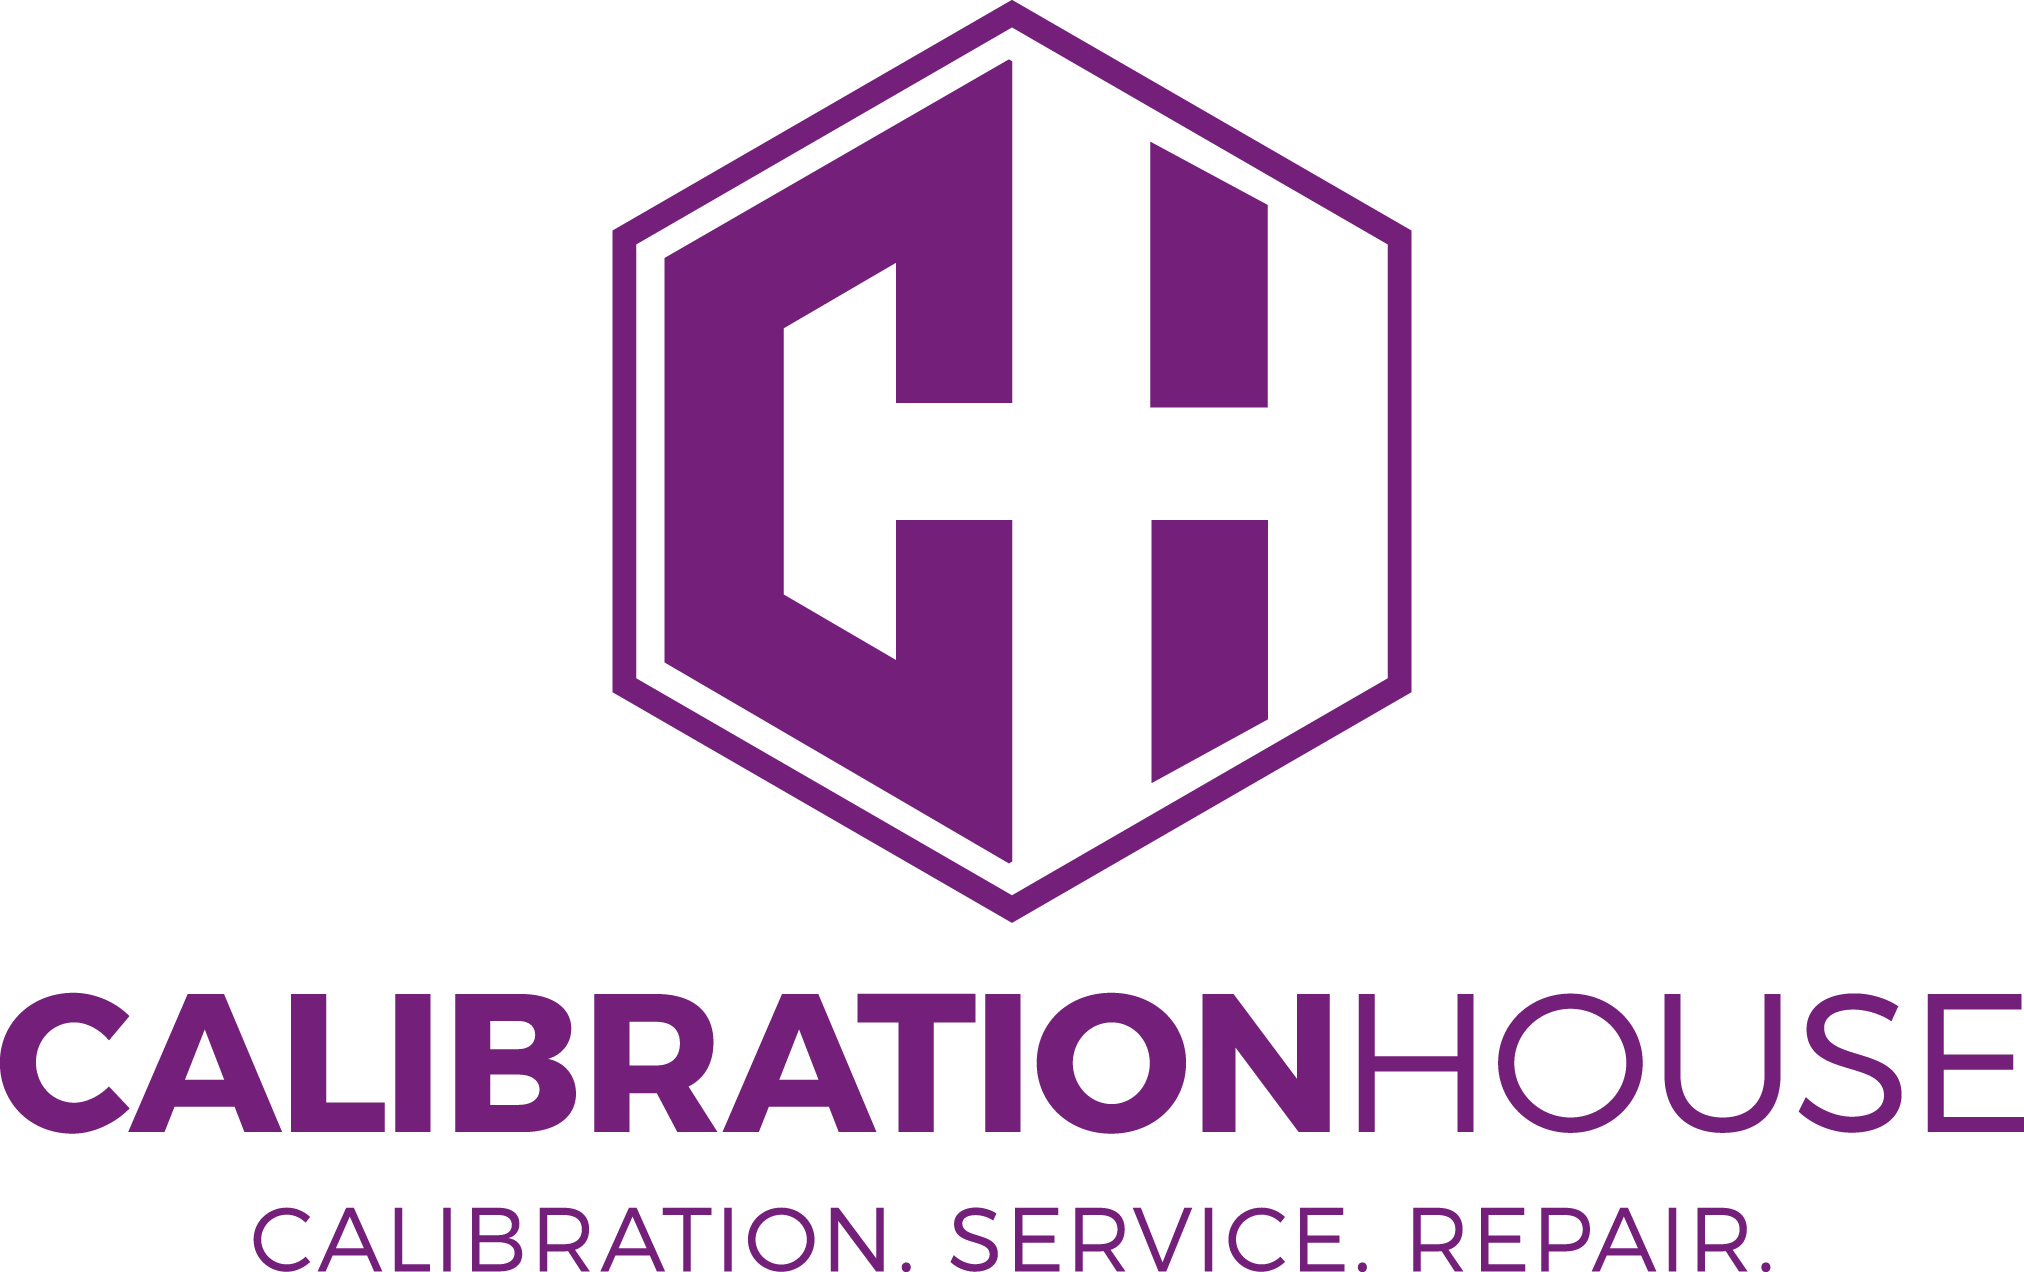 Calibrationhouse logo